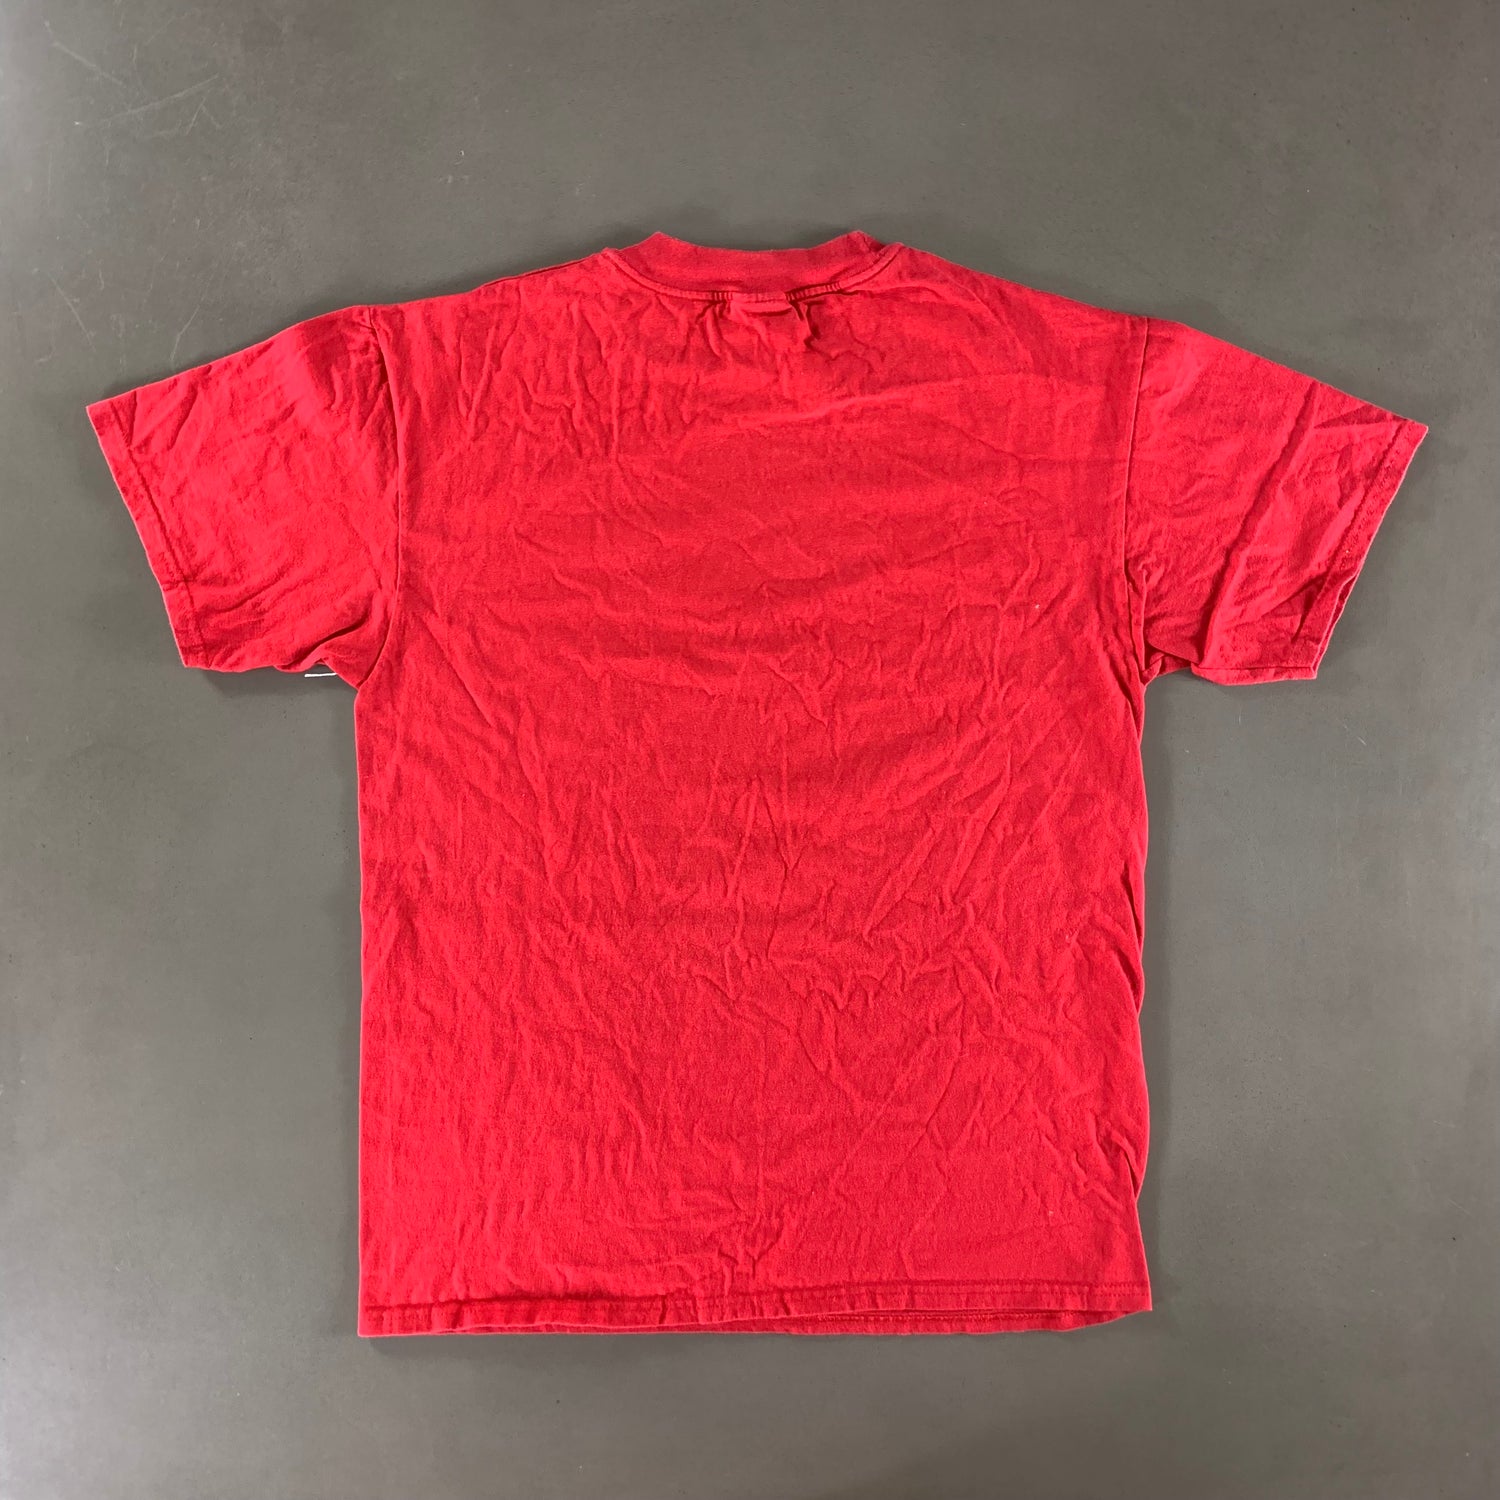 Vintage 1997 University of Arizona T-shirt size Large